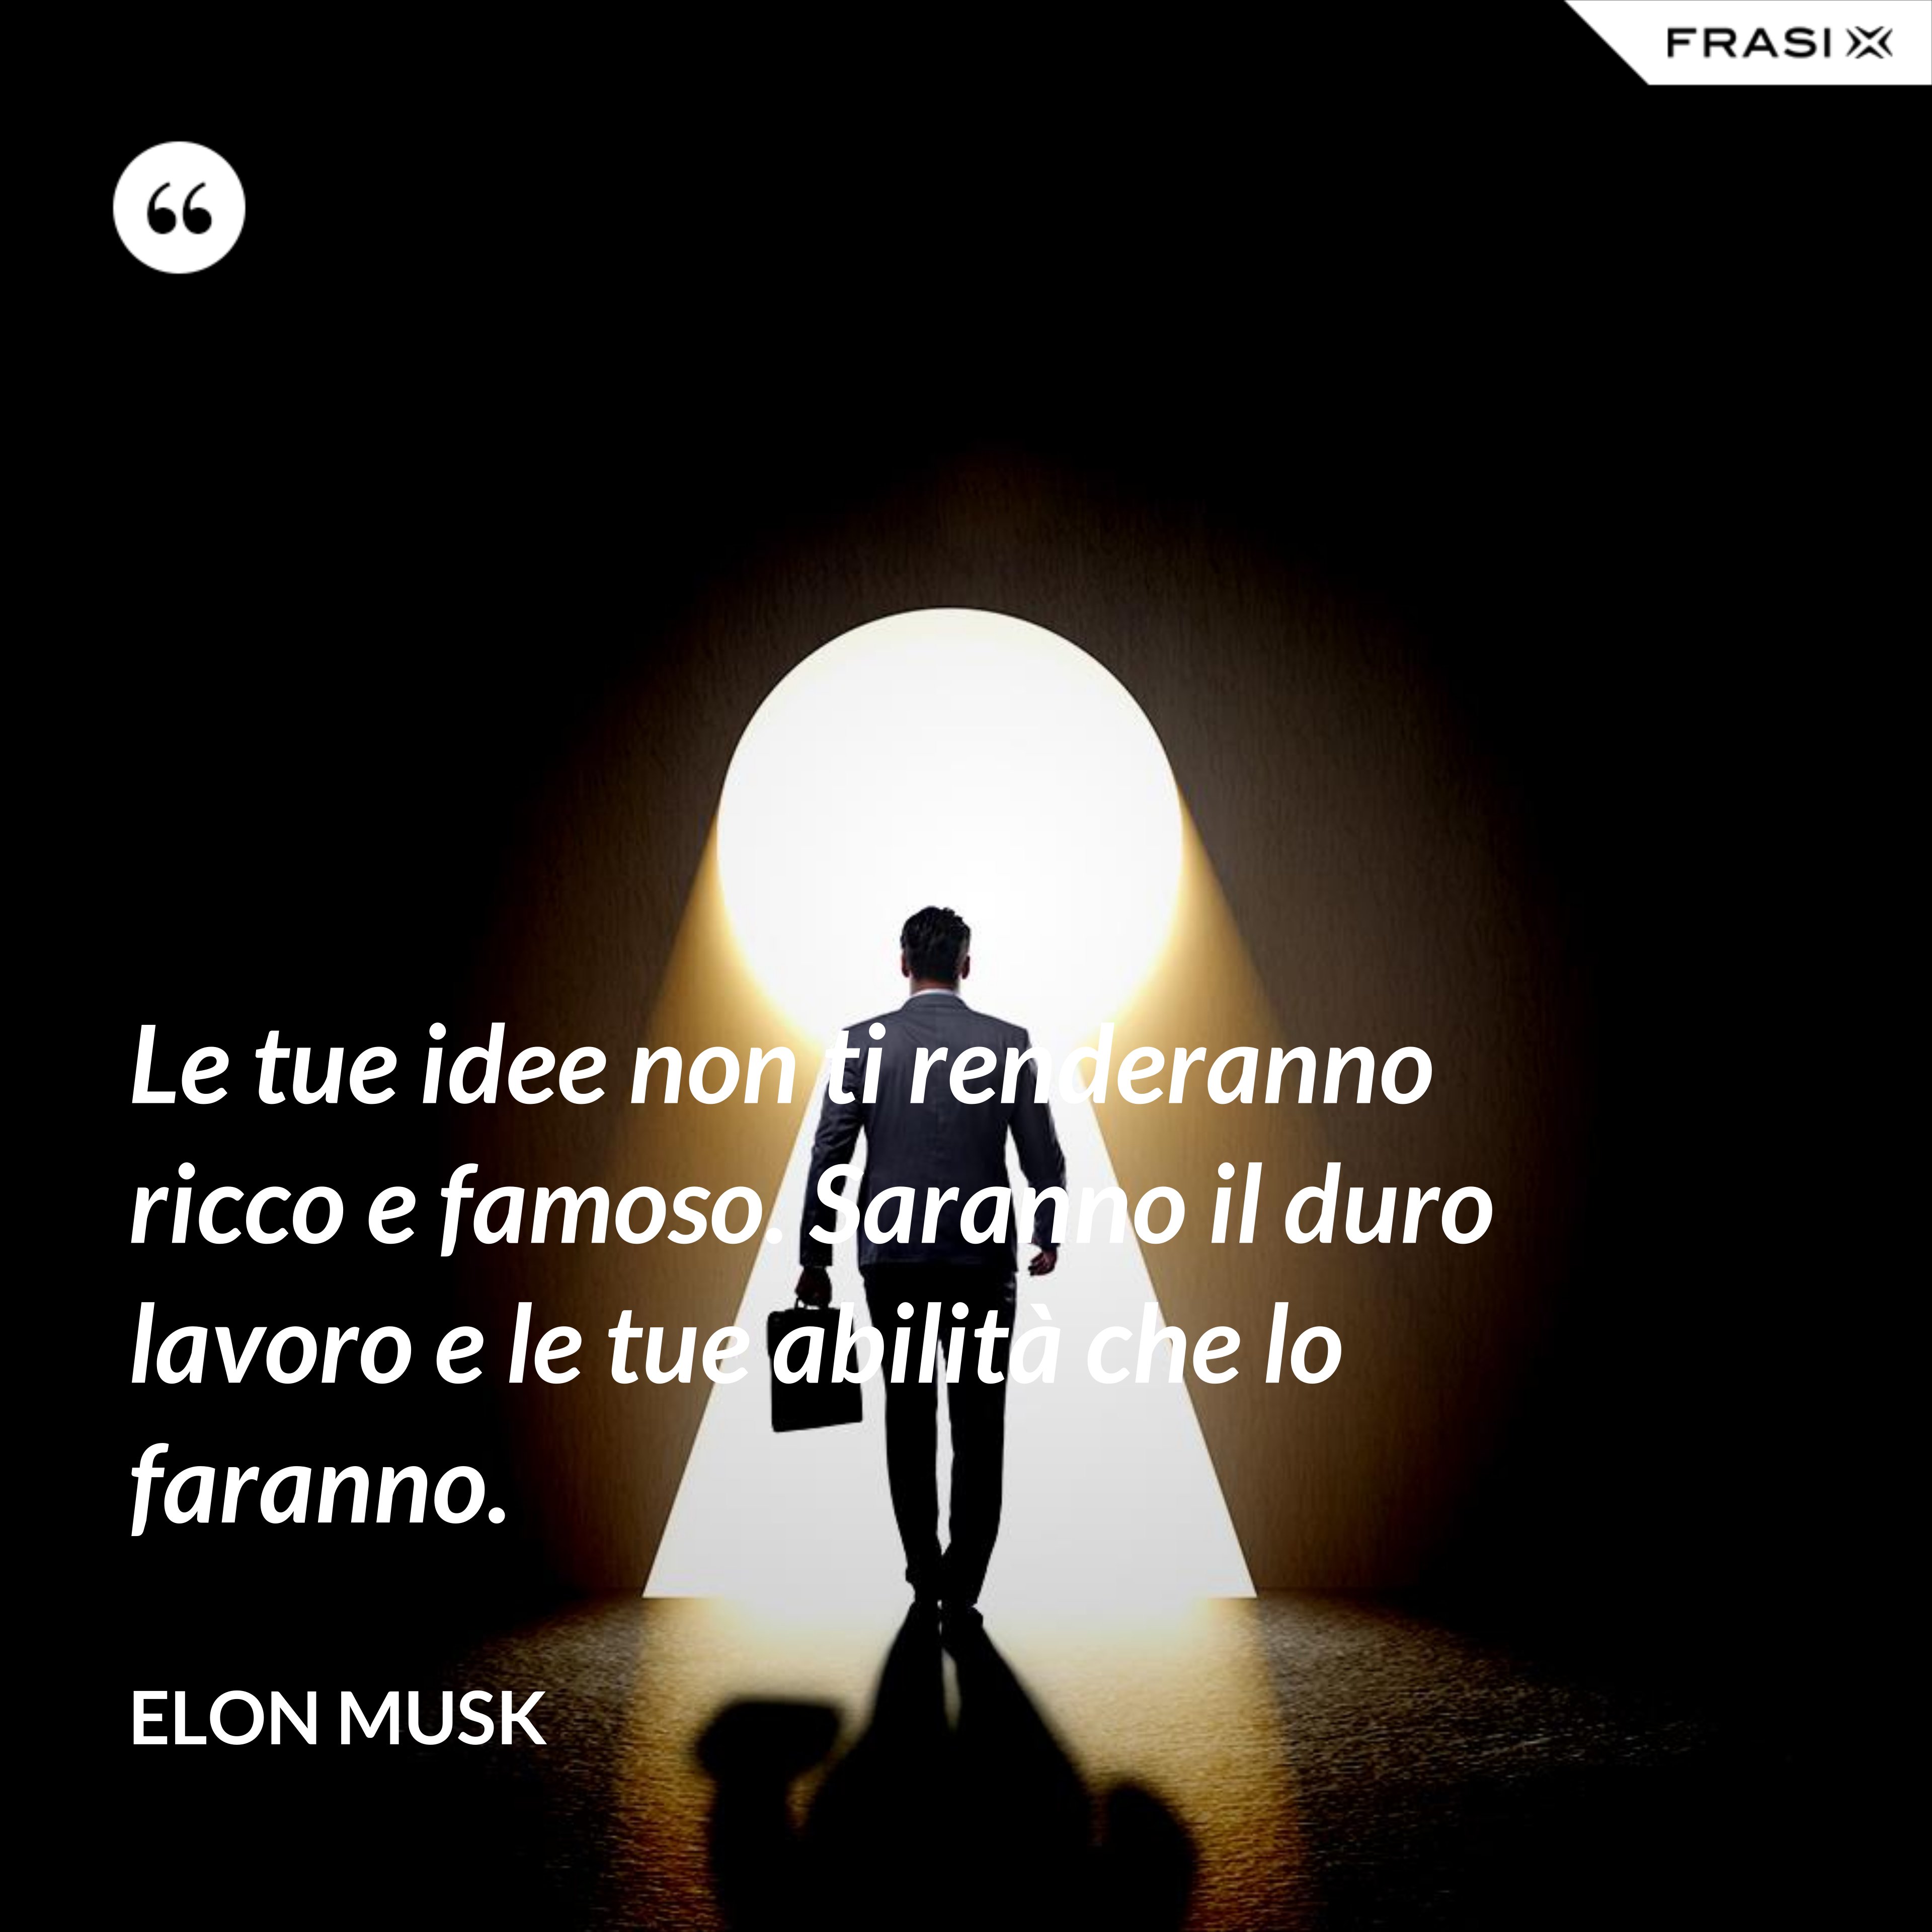 Le tue idee non ti renderanno ricco e famoso. Saranno il duro lavoro e le tue abilità che lo faranno. - Elon Musk